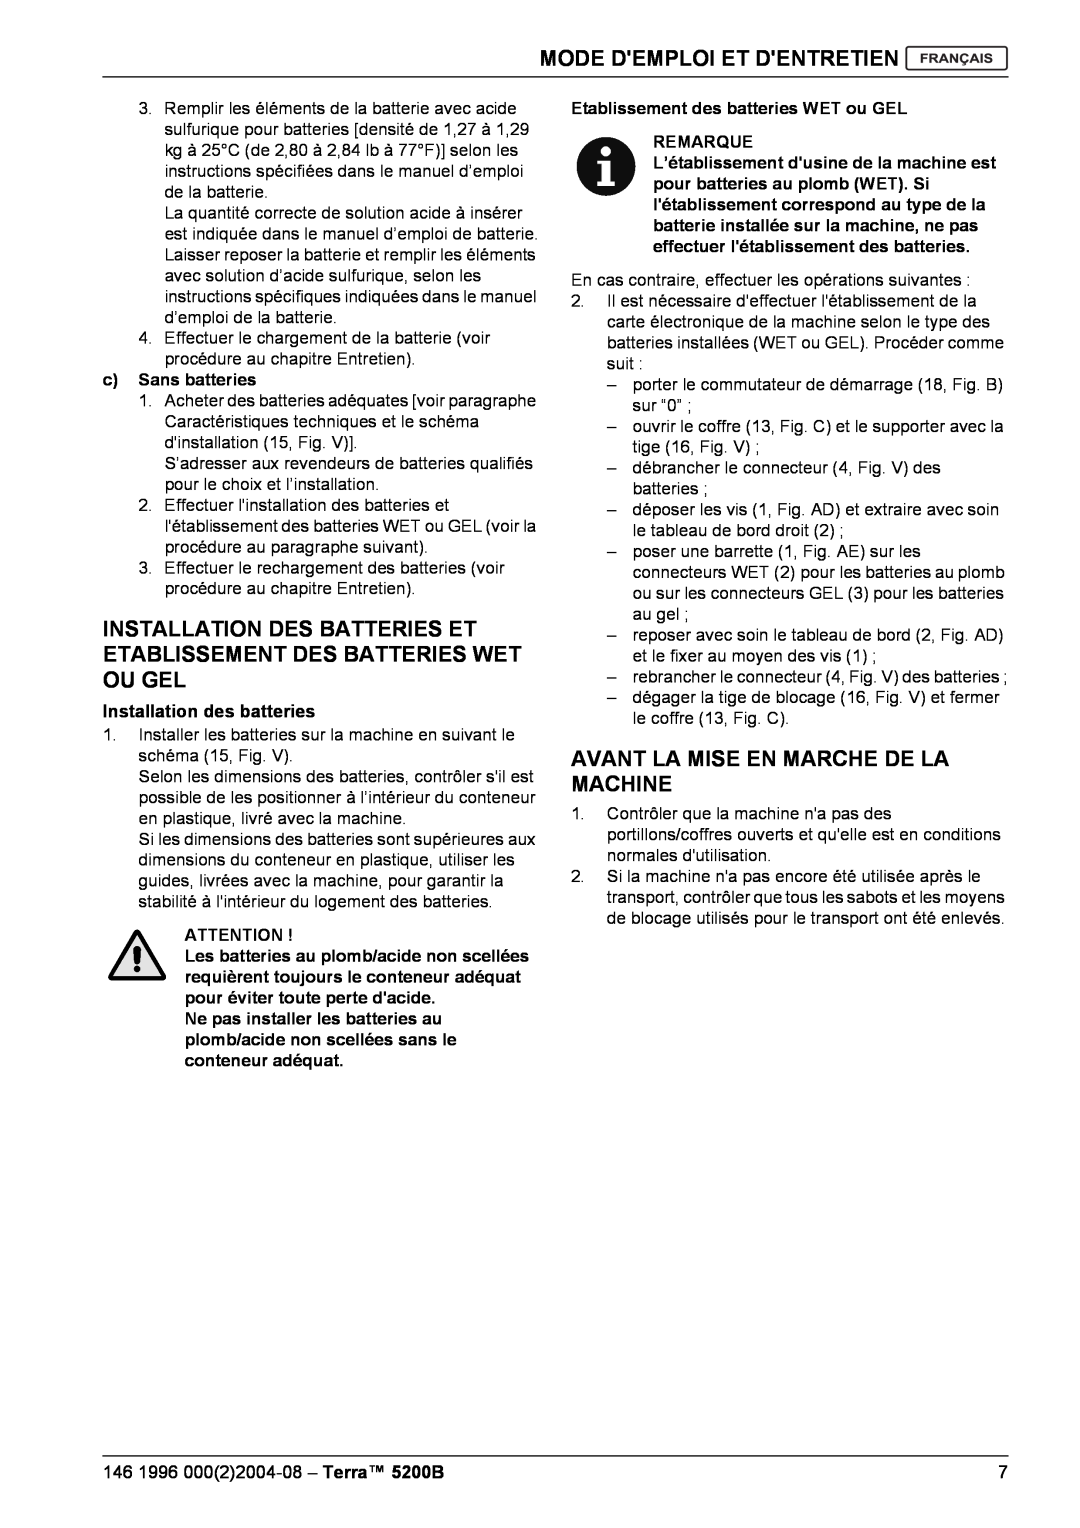 Nilfisk-Advance America 5200B manual Avant La Mise En Marche De La Machine, cSans batteries, Installation des batteries 